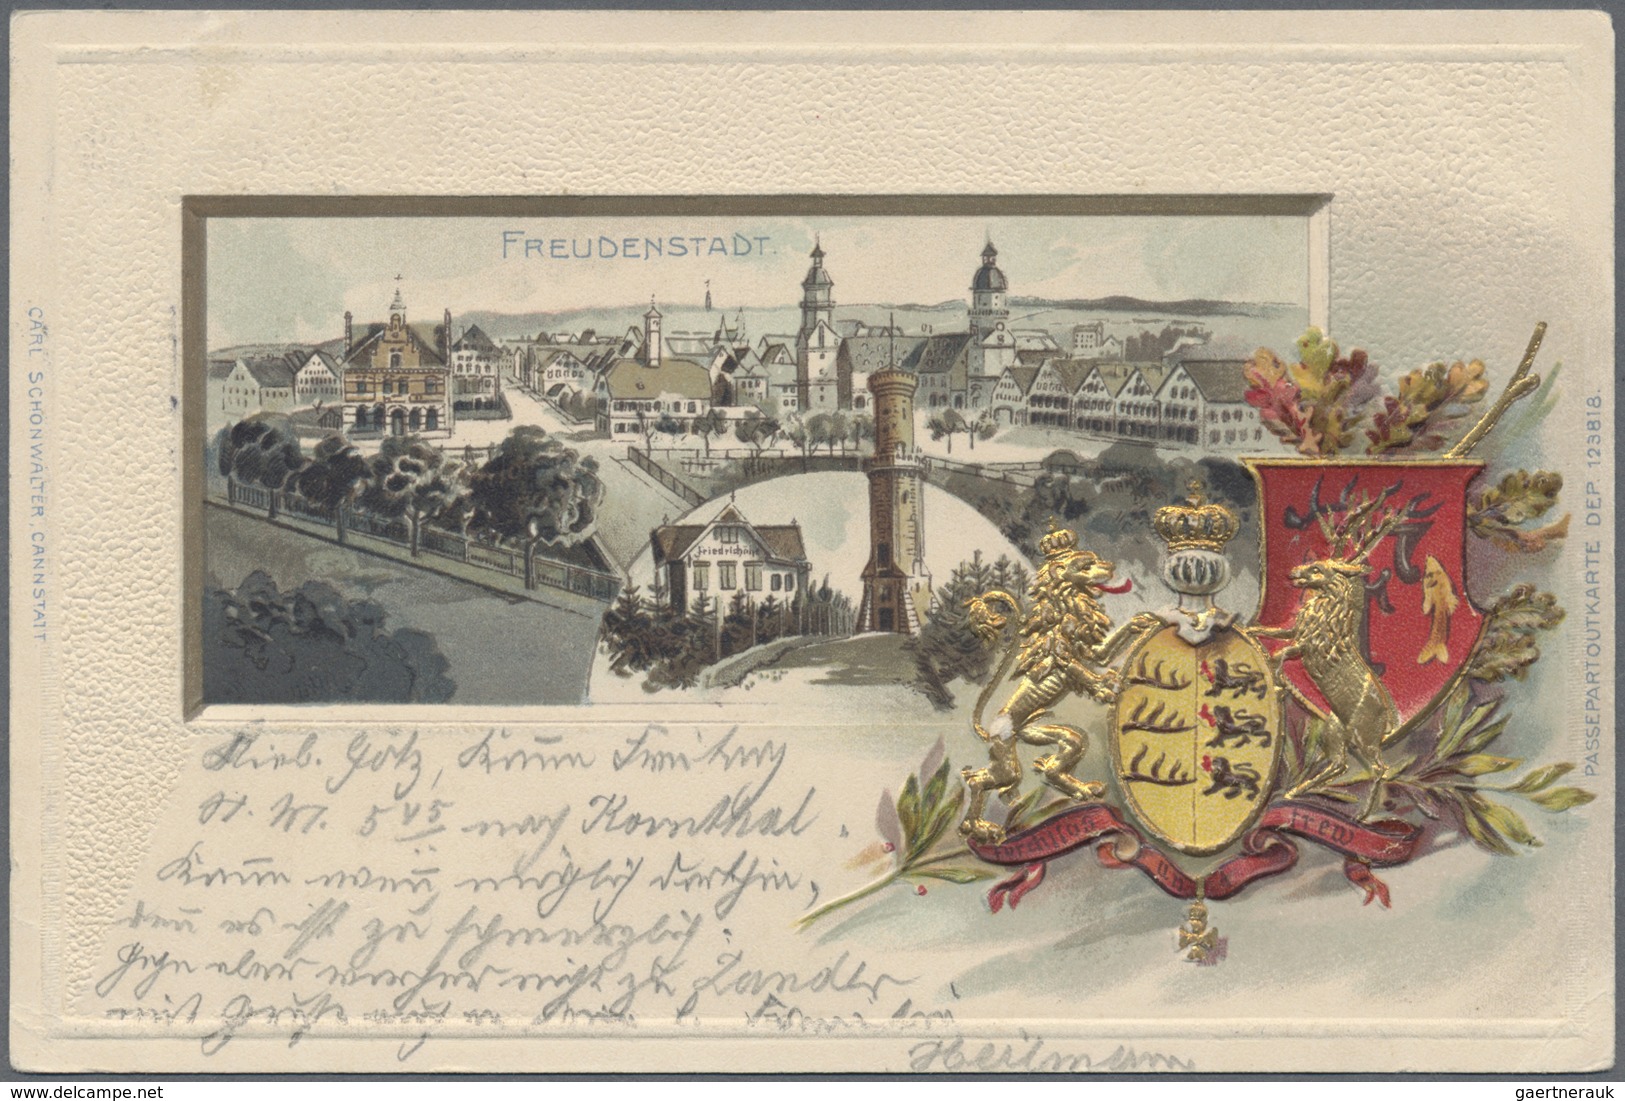 Ansichtskarten: Baden-Württemberg: 1899/1910, Sammlung von 50 Karten verschiedener württembergischer